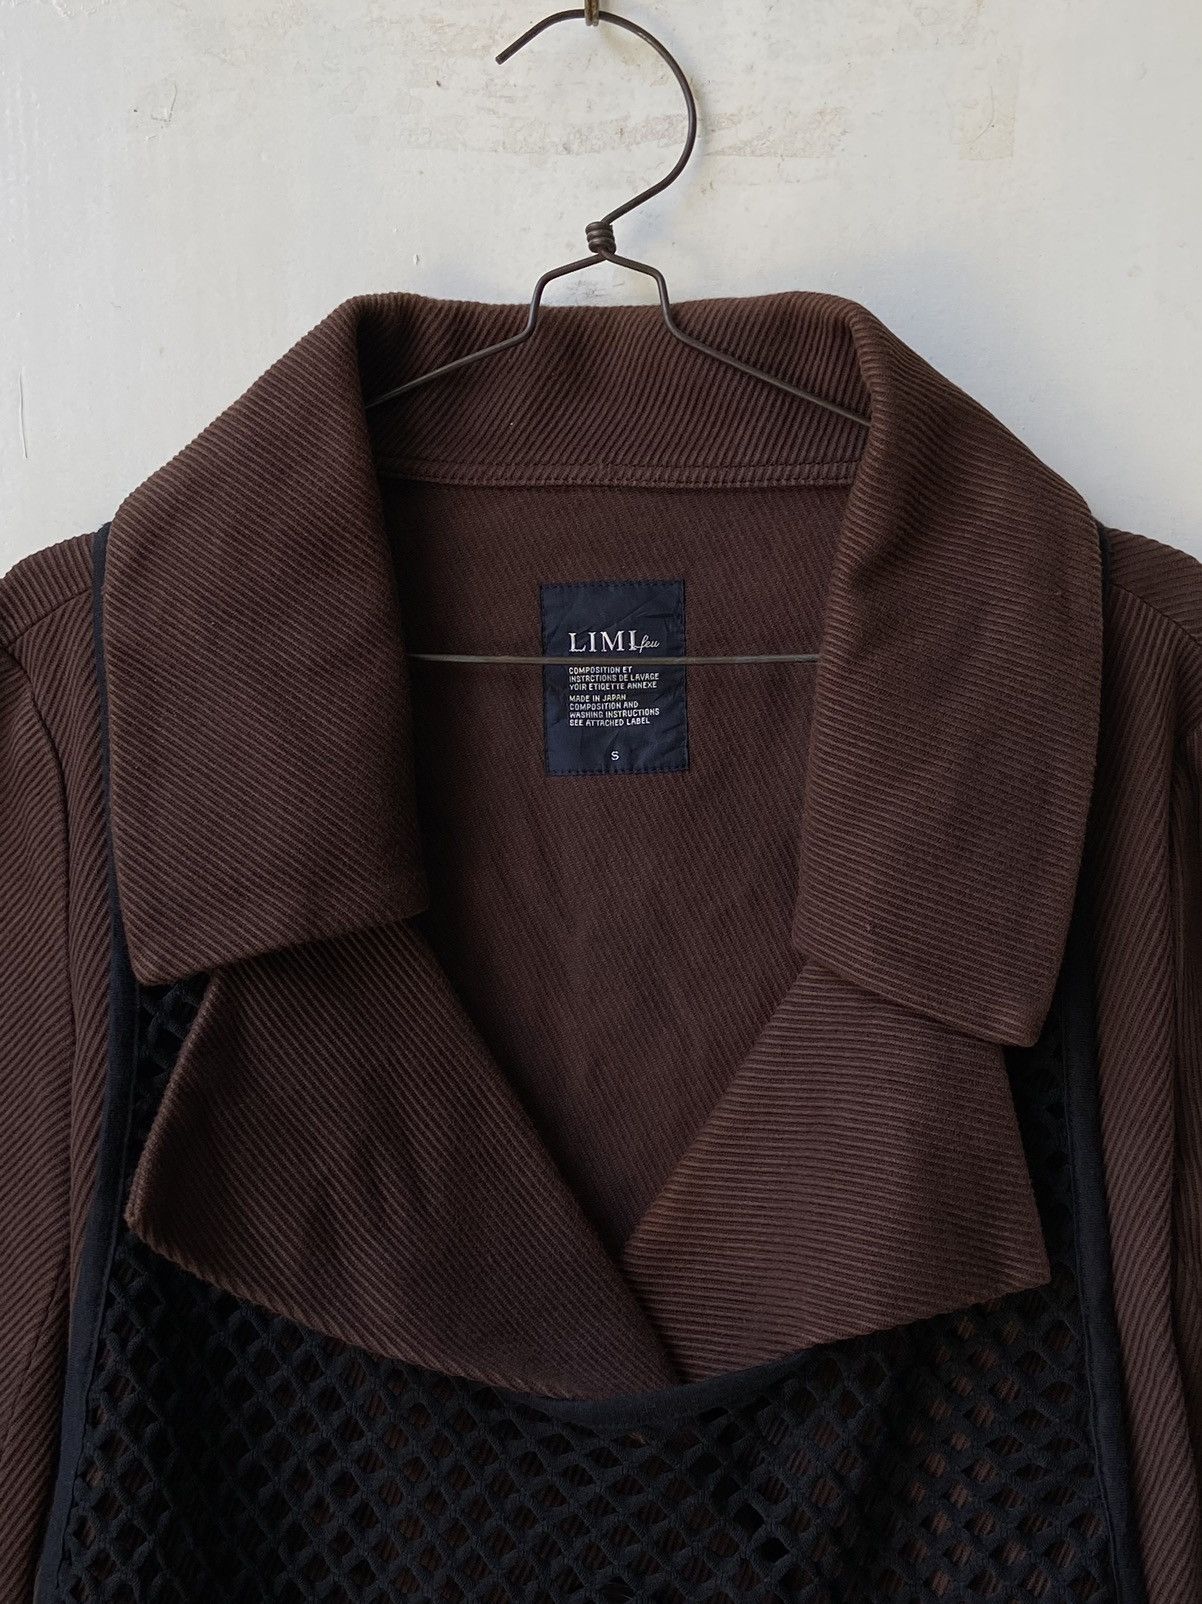 Yohji Yamamoto LIMI FEU Brown Blazer Vest Size US S / EU 44-46 / 1 - 4 Thumbnail